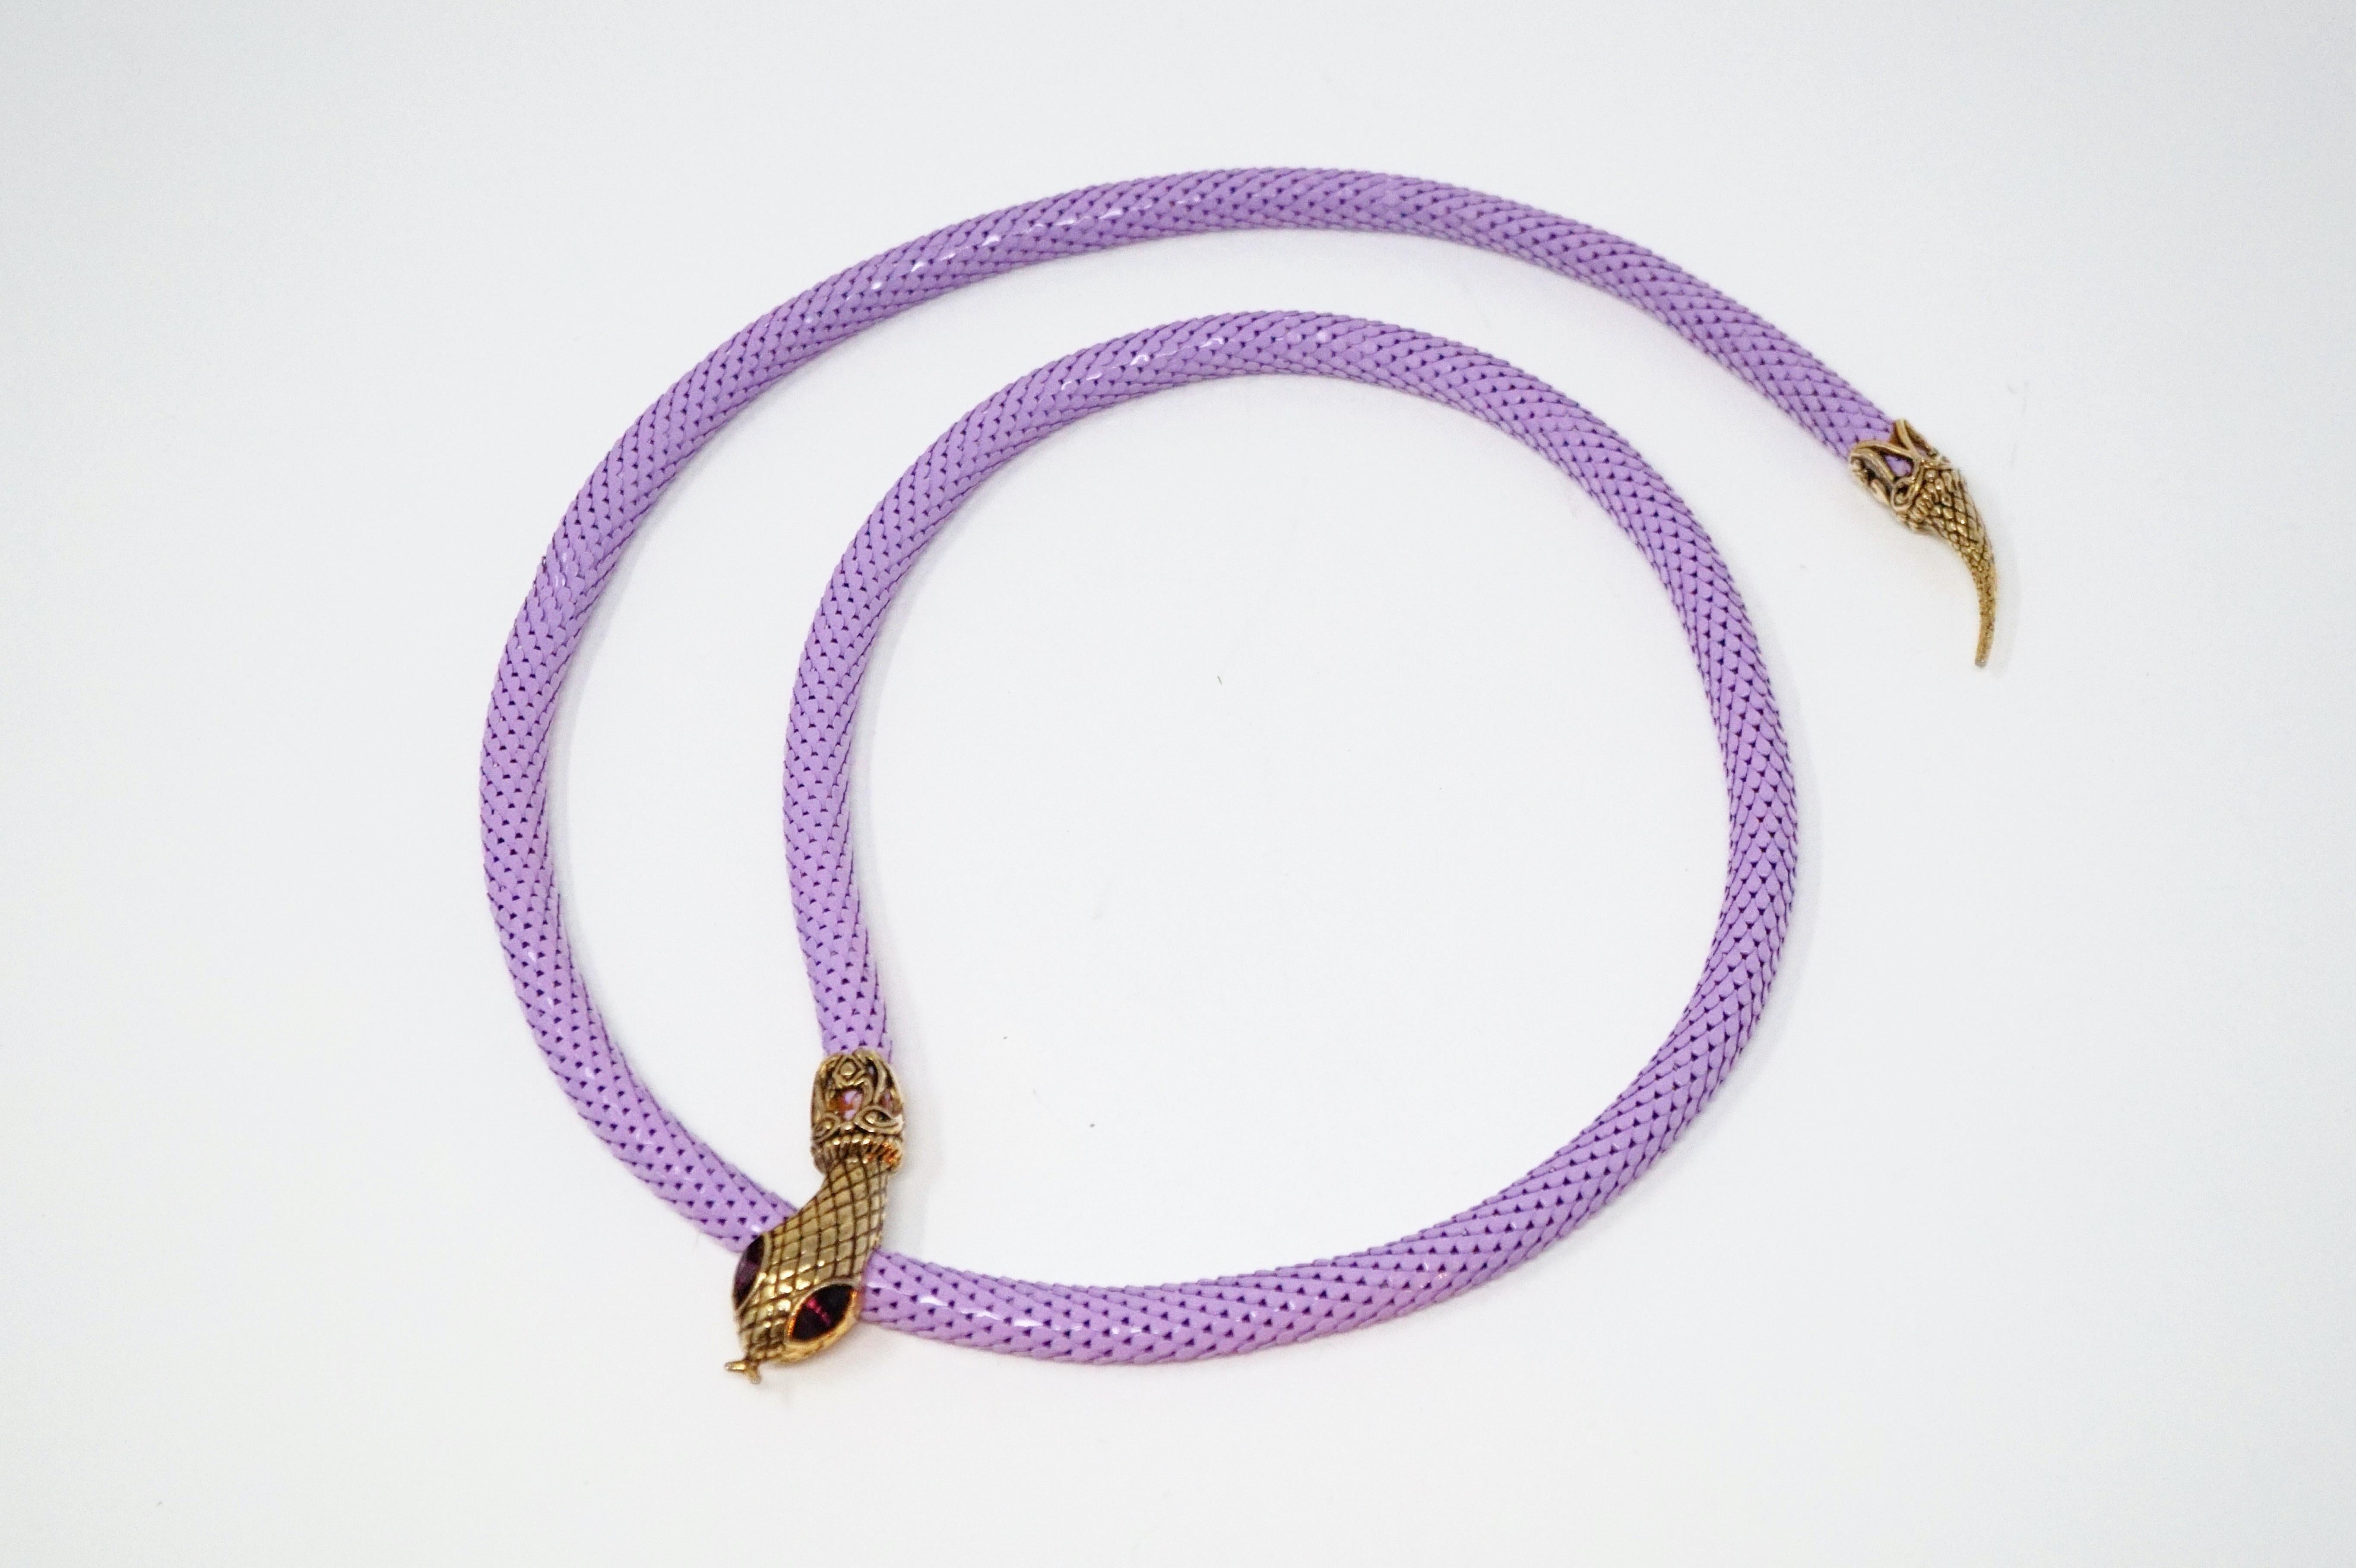 1980s Lavender Mesh Snake Belt or Necklace by DL Auld Co, Signed 3